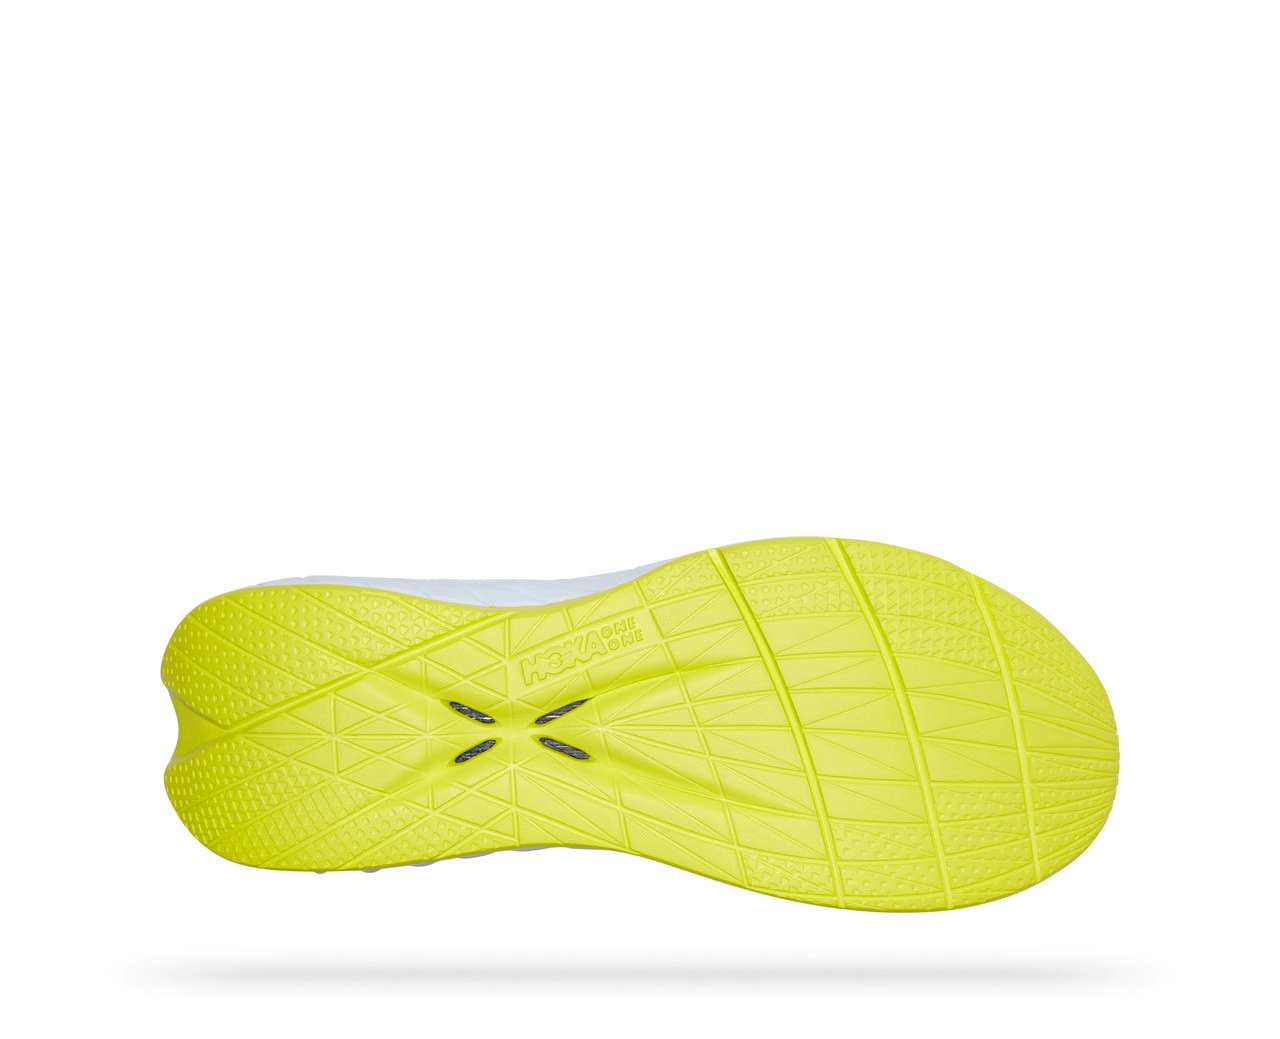 Chaussures de course Carbon X 2 Voile flottante/Onagre